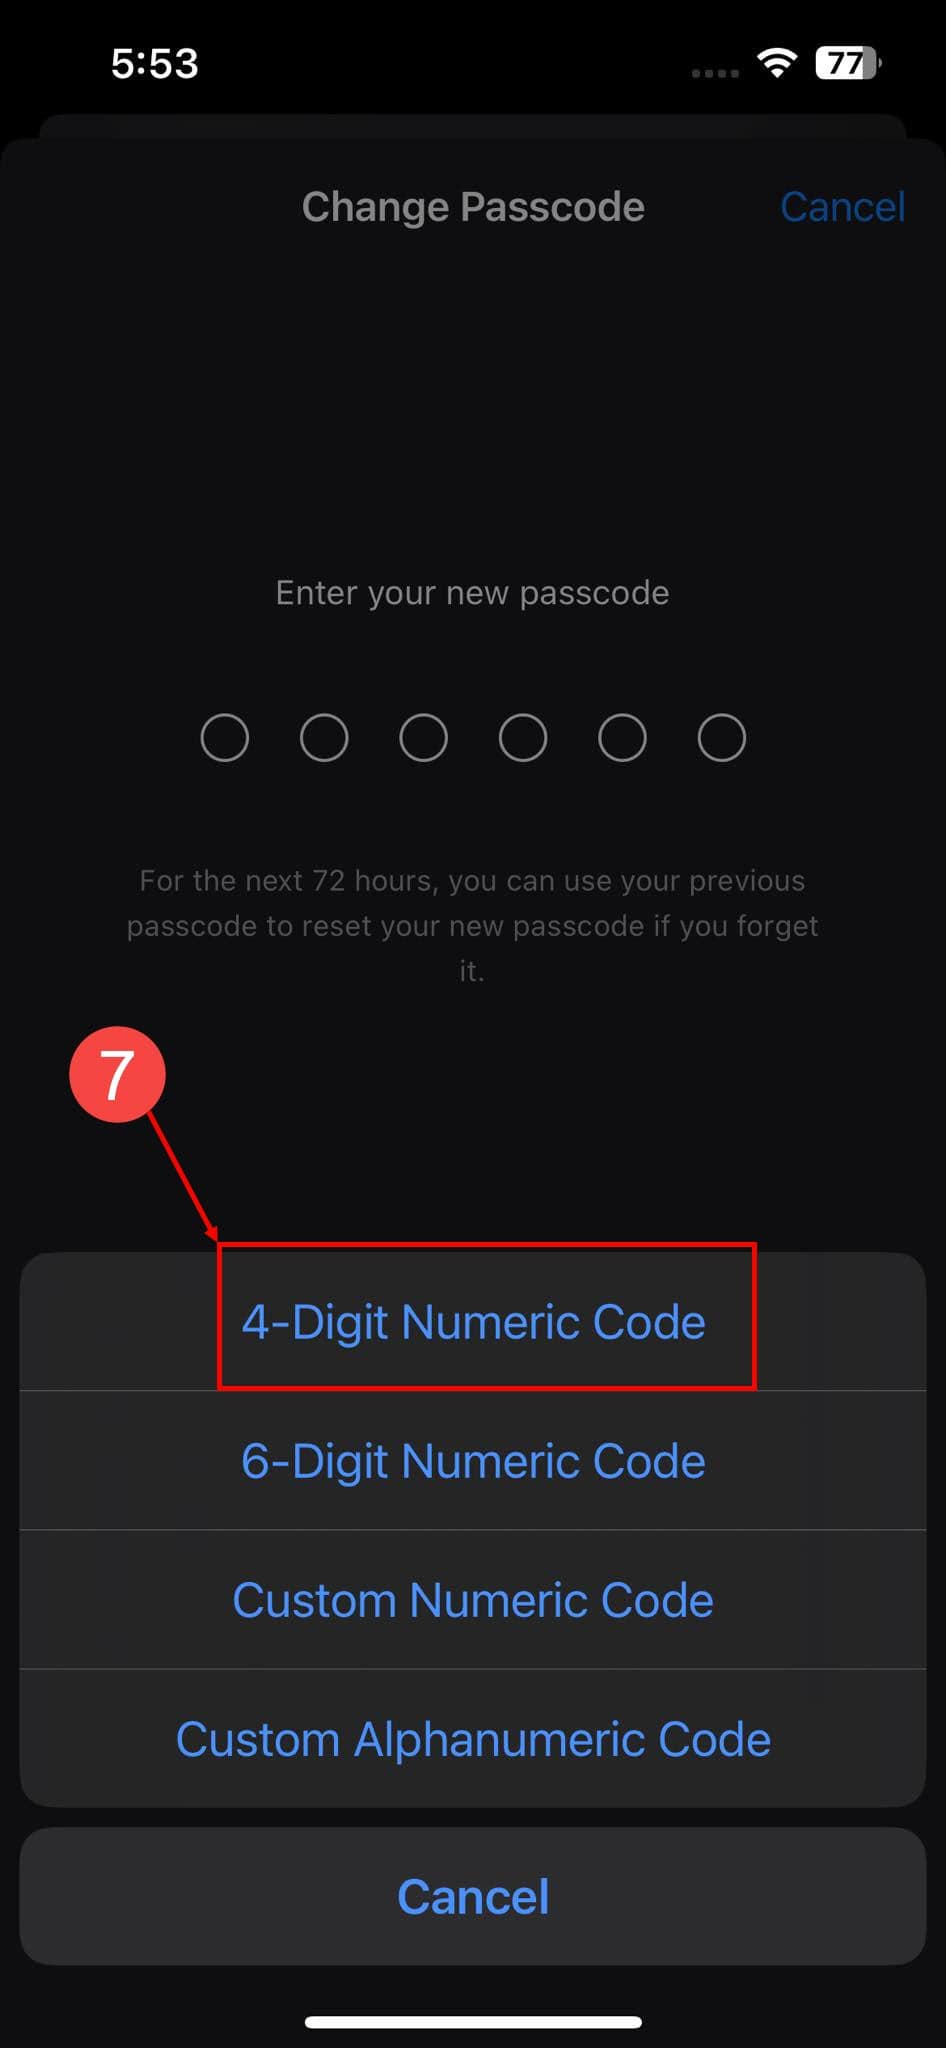 4místný číselný kód pro změnu hesla